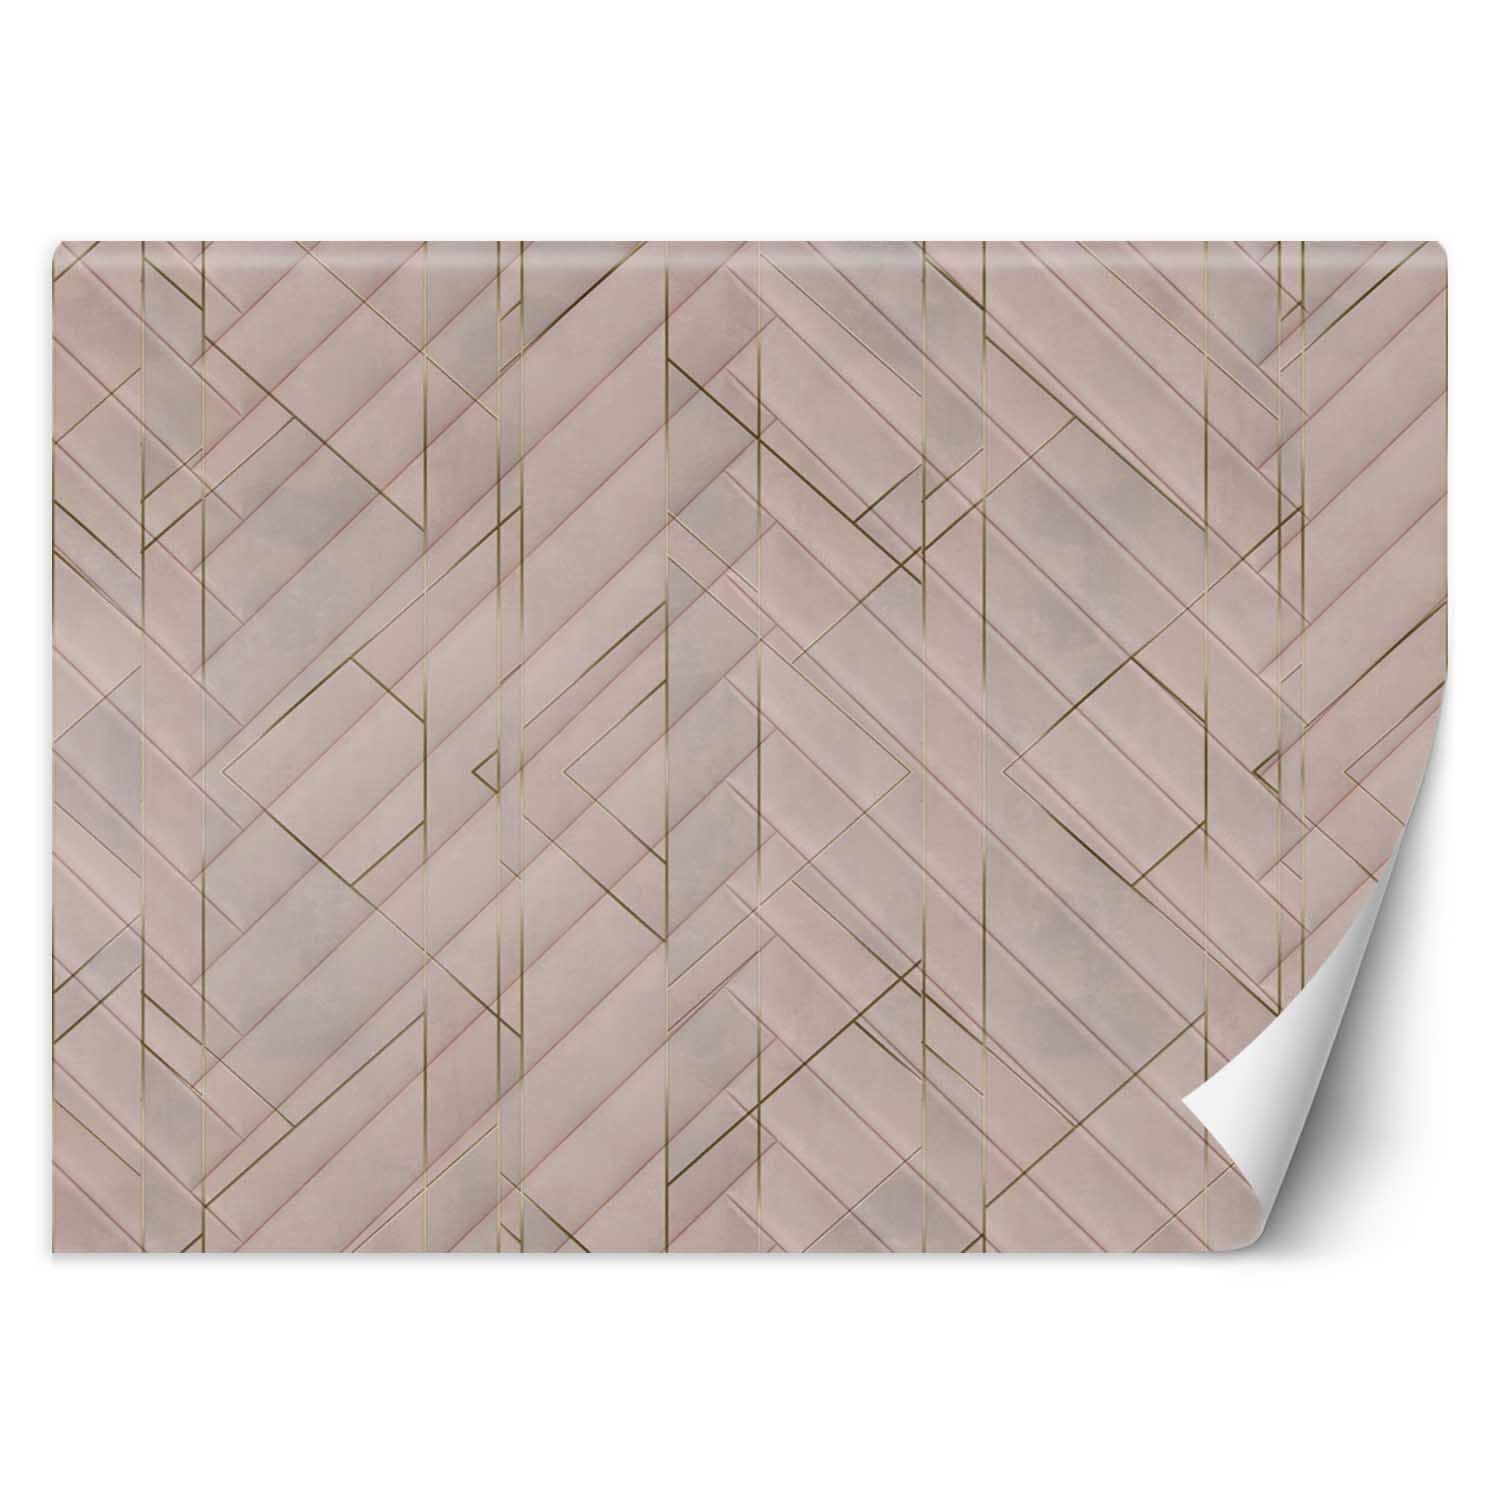 Trend24 – Behang – Geometrisch Patroon – Behangpapier – Behang Woonkamer – Fotobehang – 200x140x2 cm – Incl. behanglijm